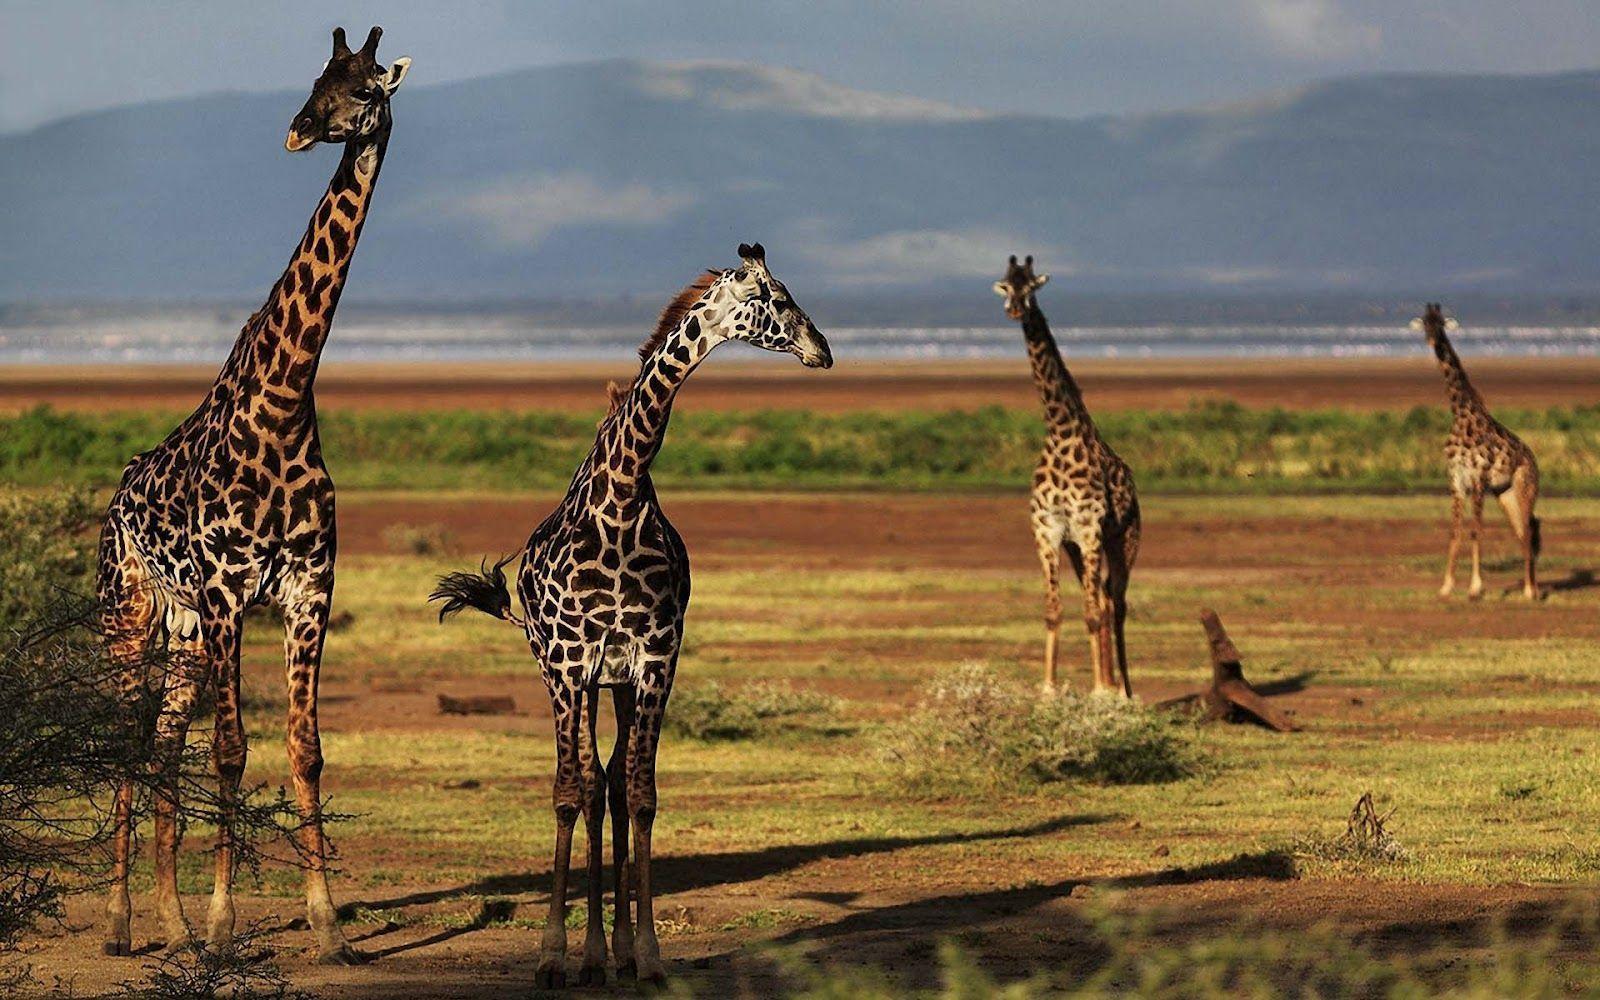 Group of giraffes wallpaper. HD Animals Wallpaper